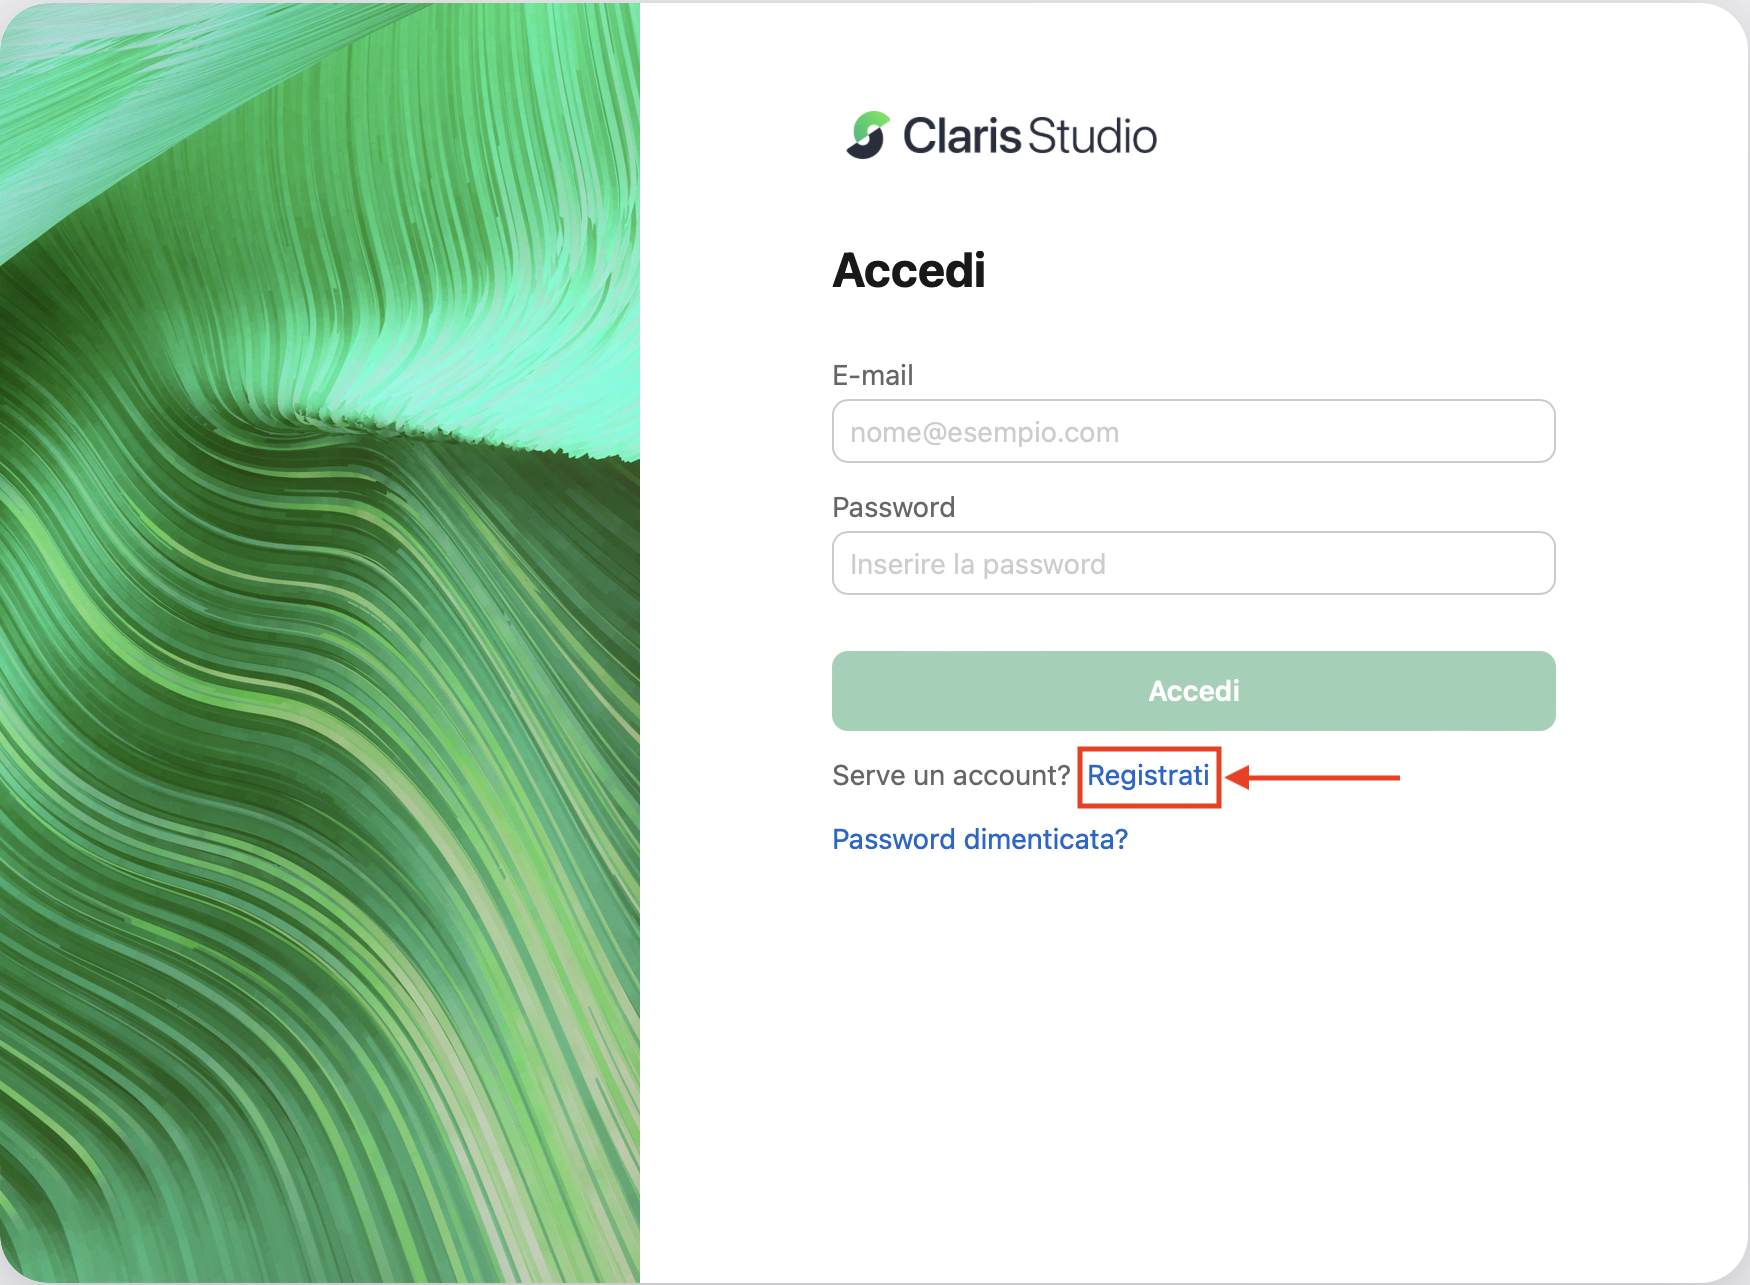 Pagina di accesso o registrazione di Claris Studio con registrazione indicata